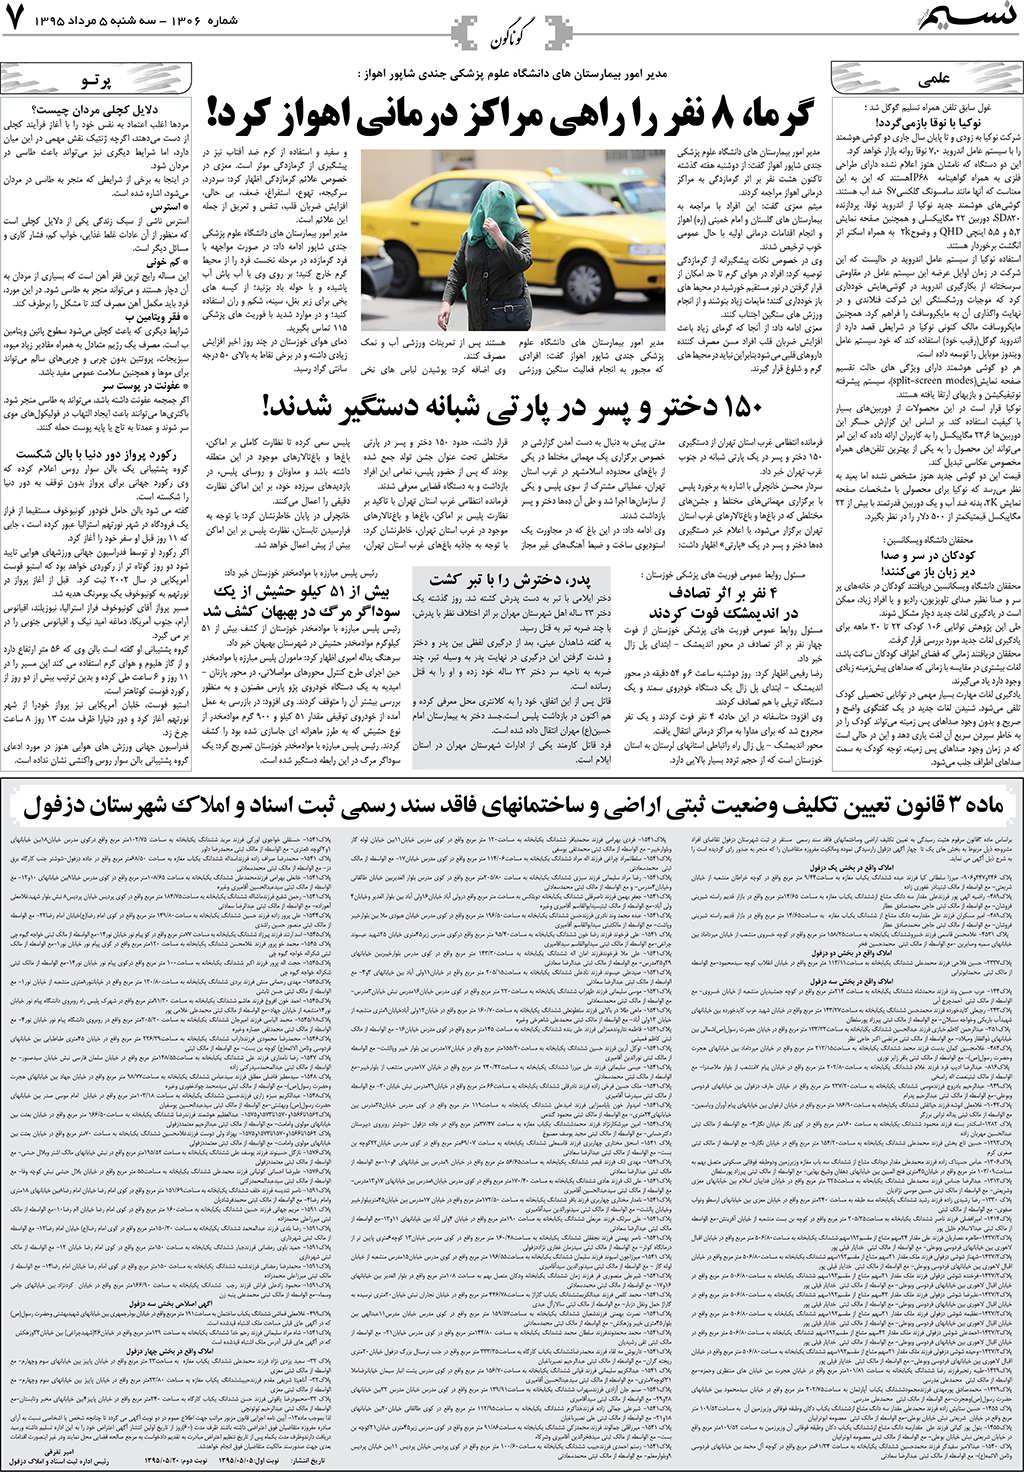 صفحه گوناگون روزنامه نسیم شماره 1306